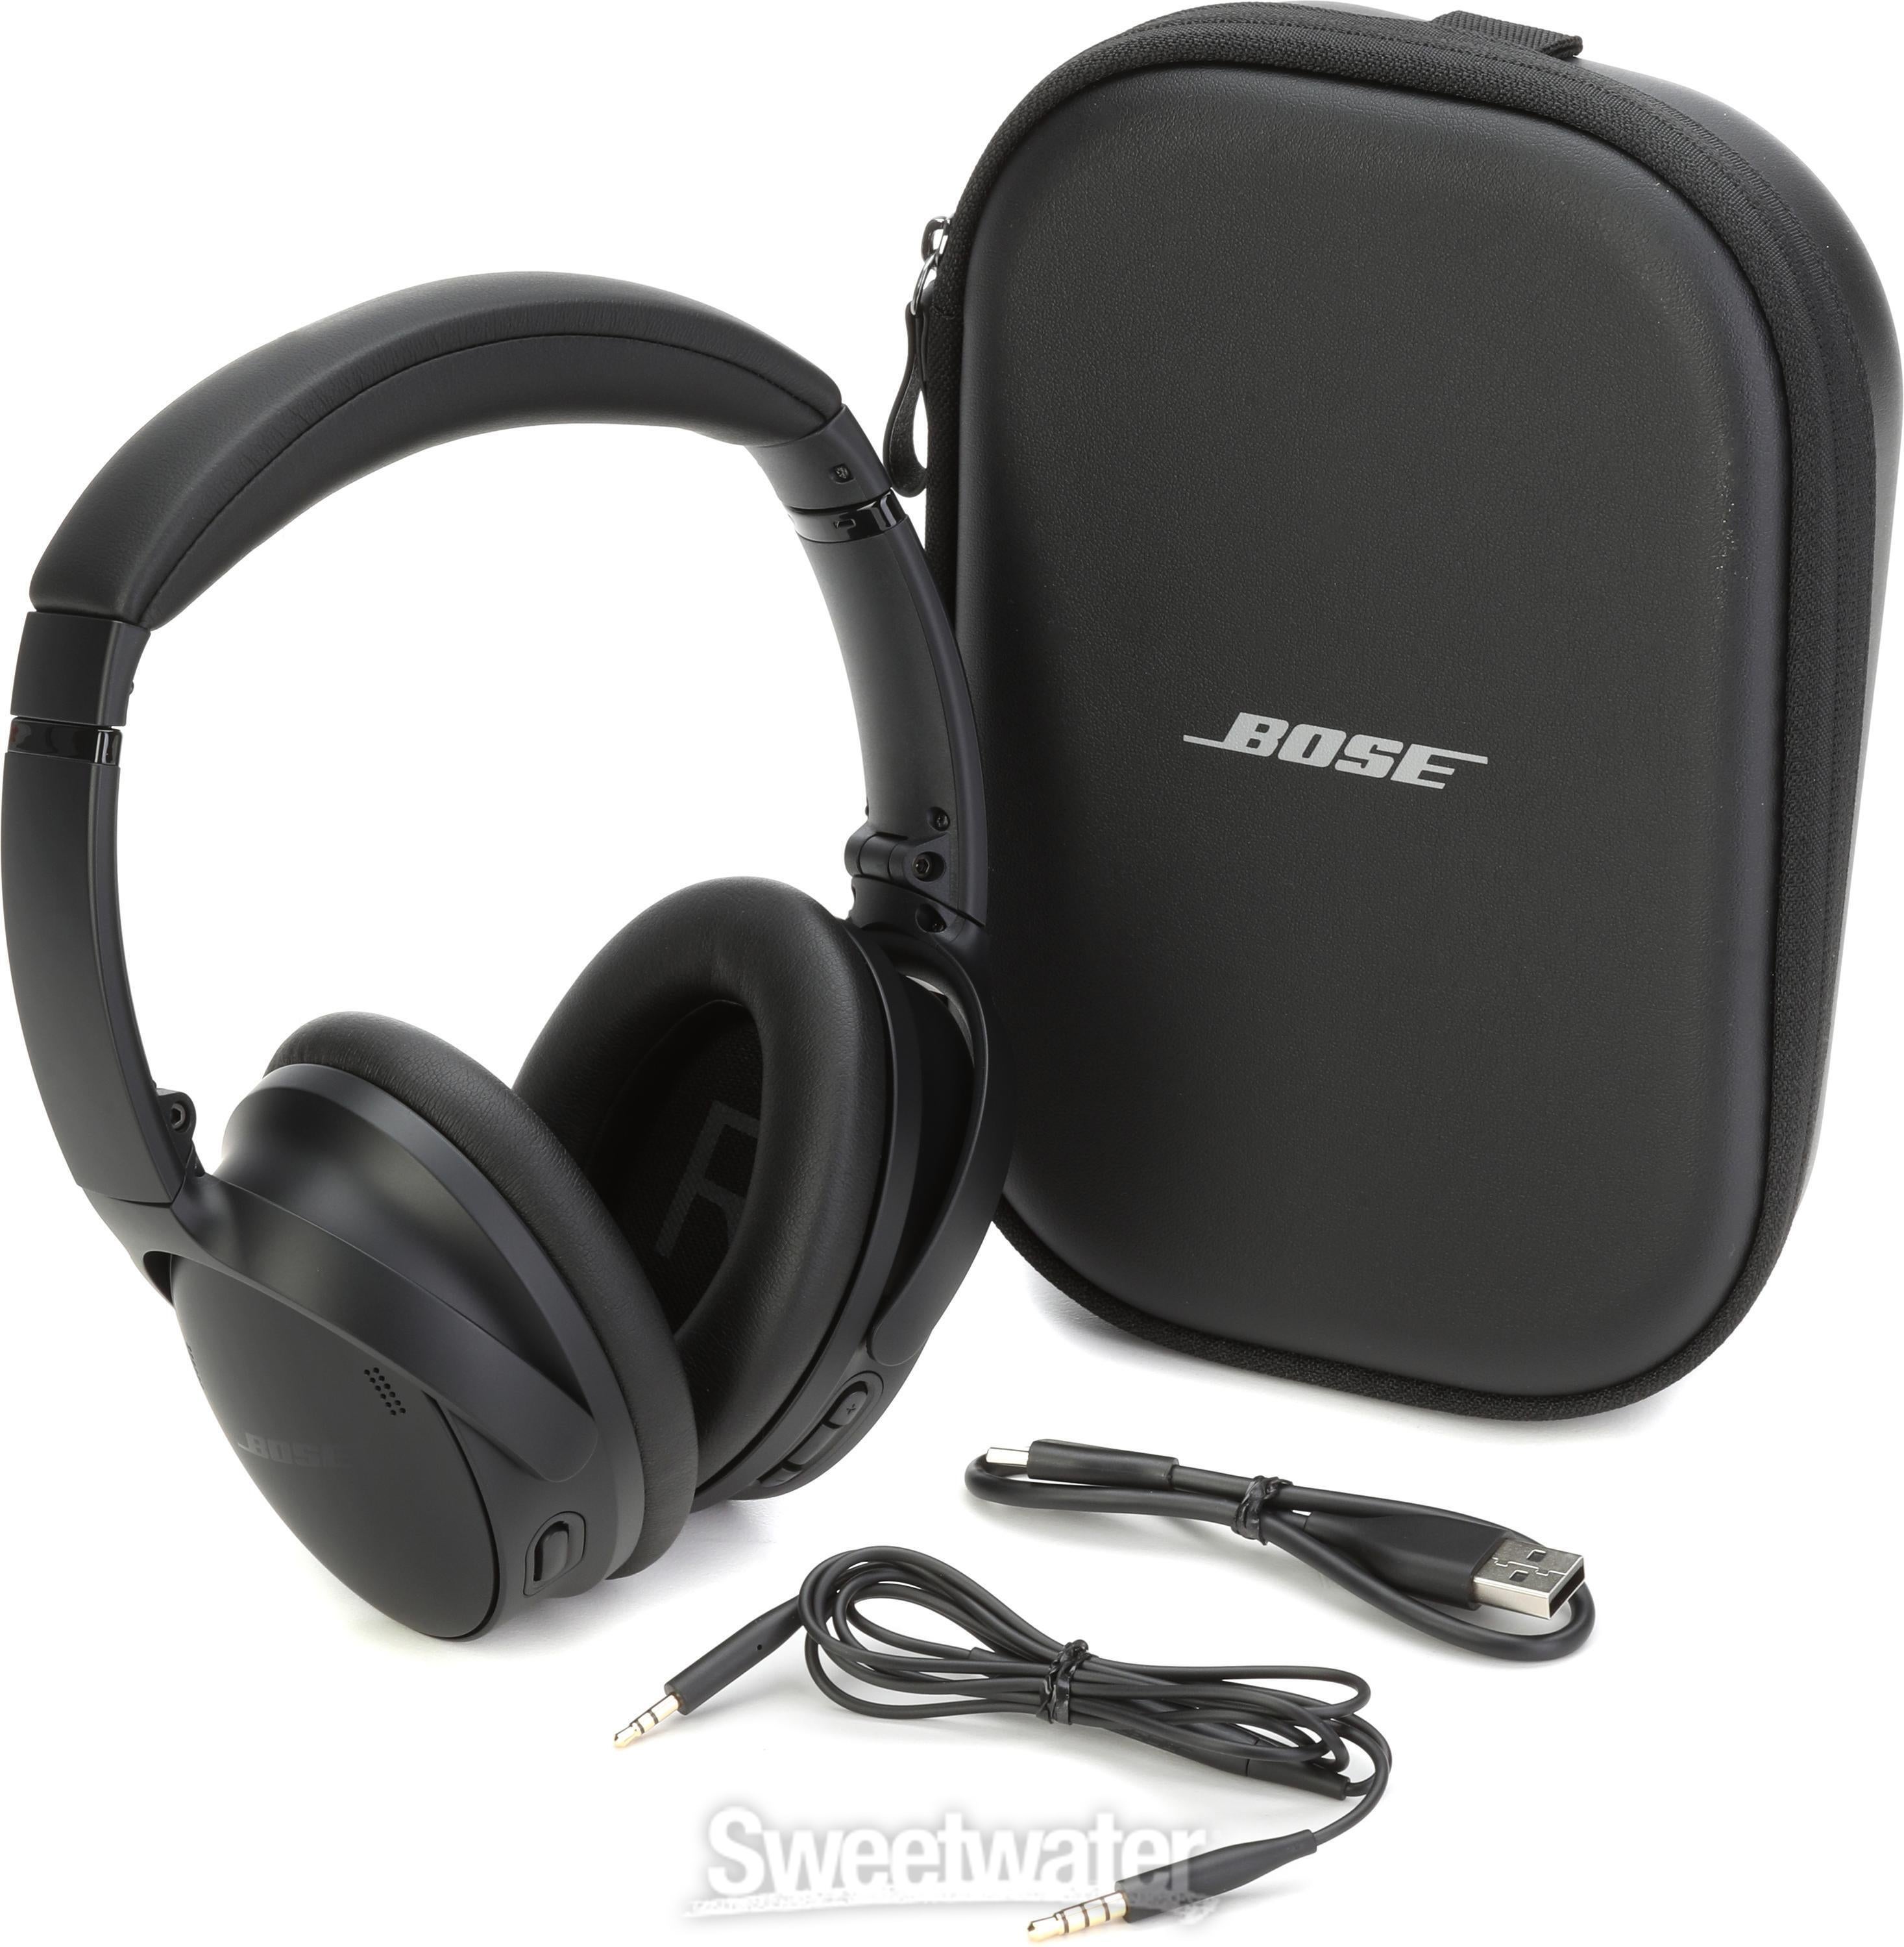 Bose QuietComfort Headphones - Black | Sweetwater